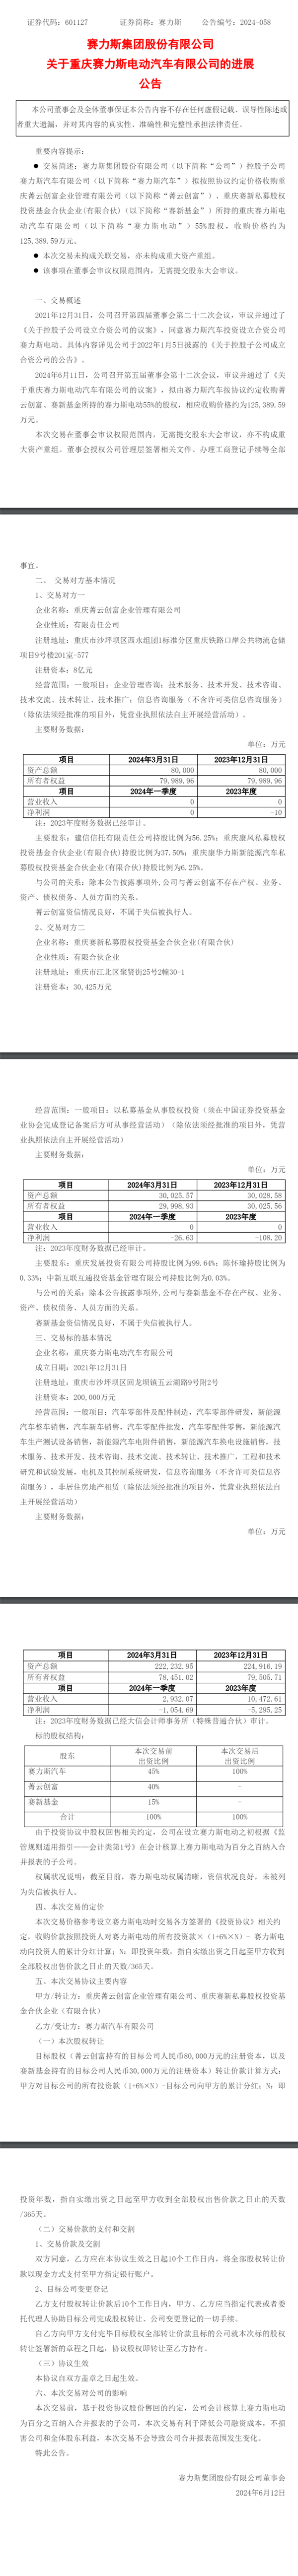 重庆赛力斯汽车计划12.54亿收购赛力斯电动55%股权  第1张